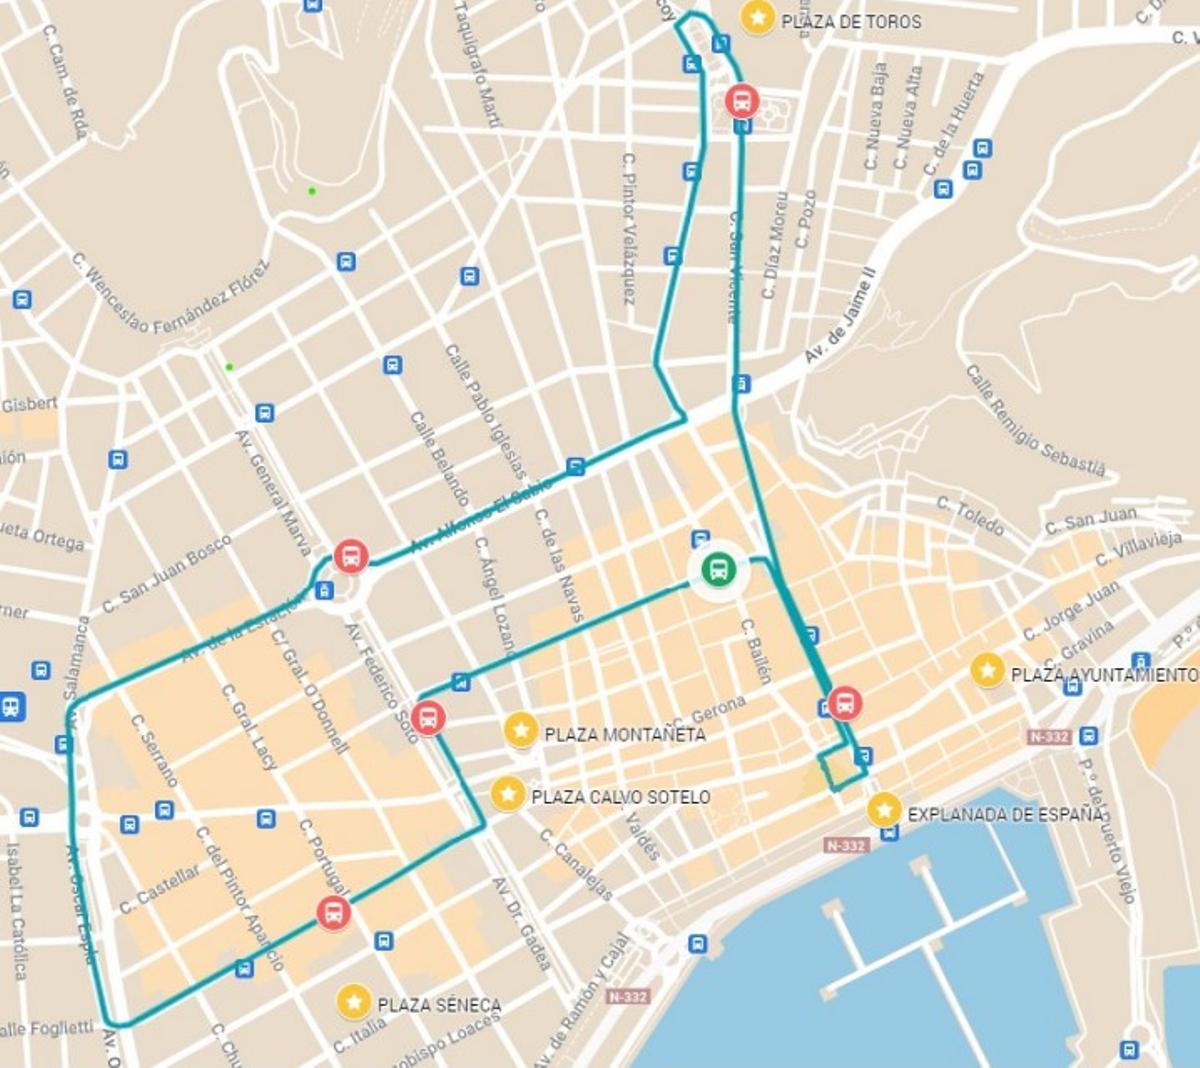 Itinerario del autobús navideño ofrecido por el Ayuntamiento y Vectalia Mia.